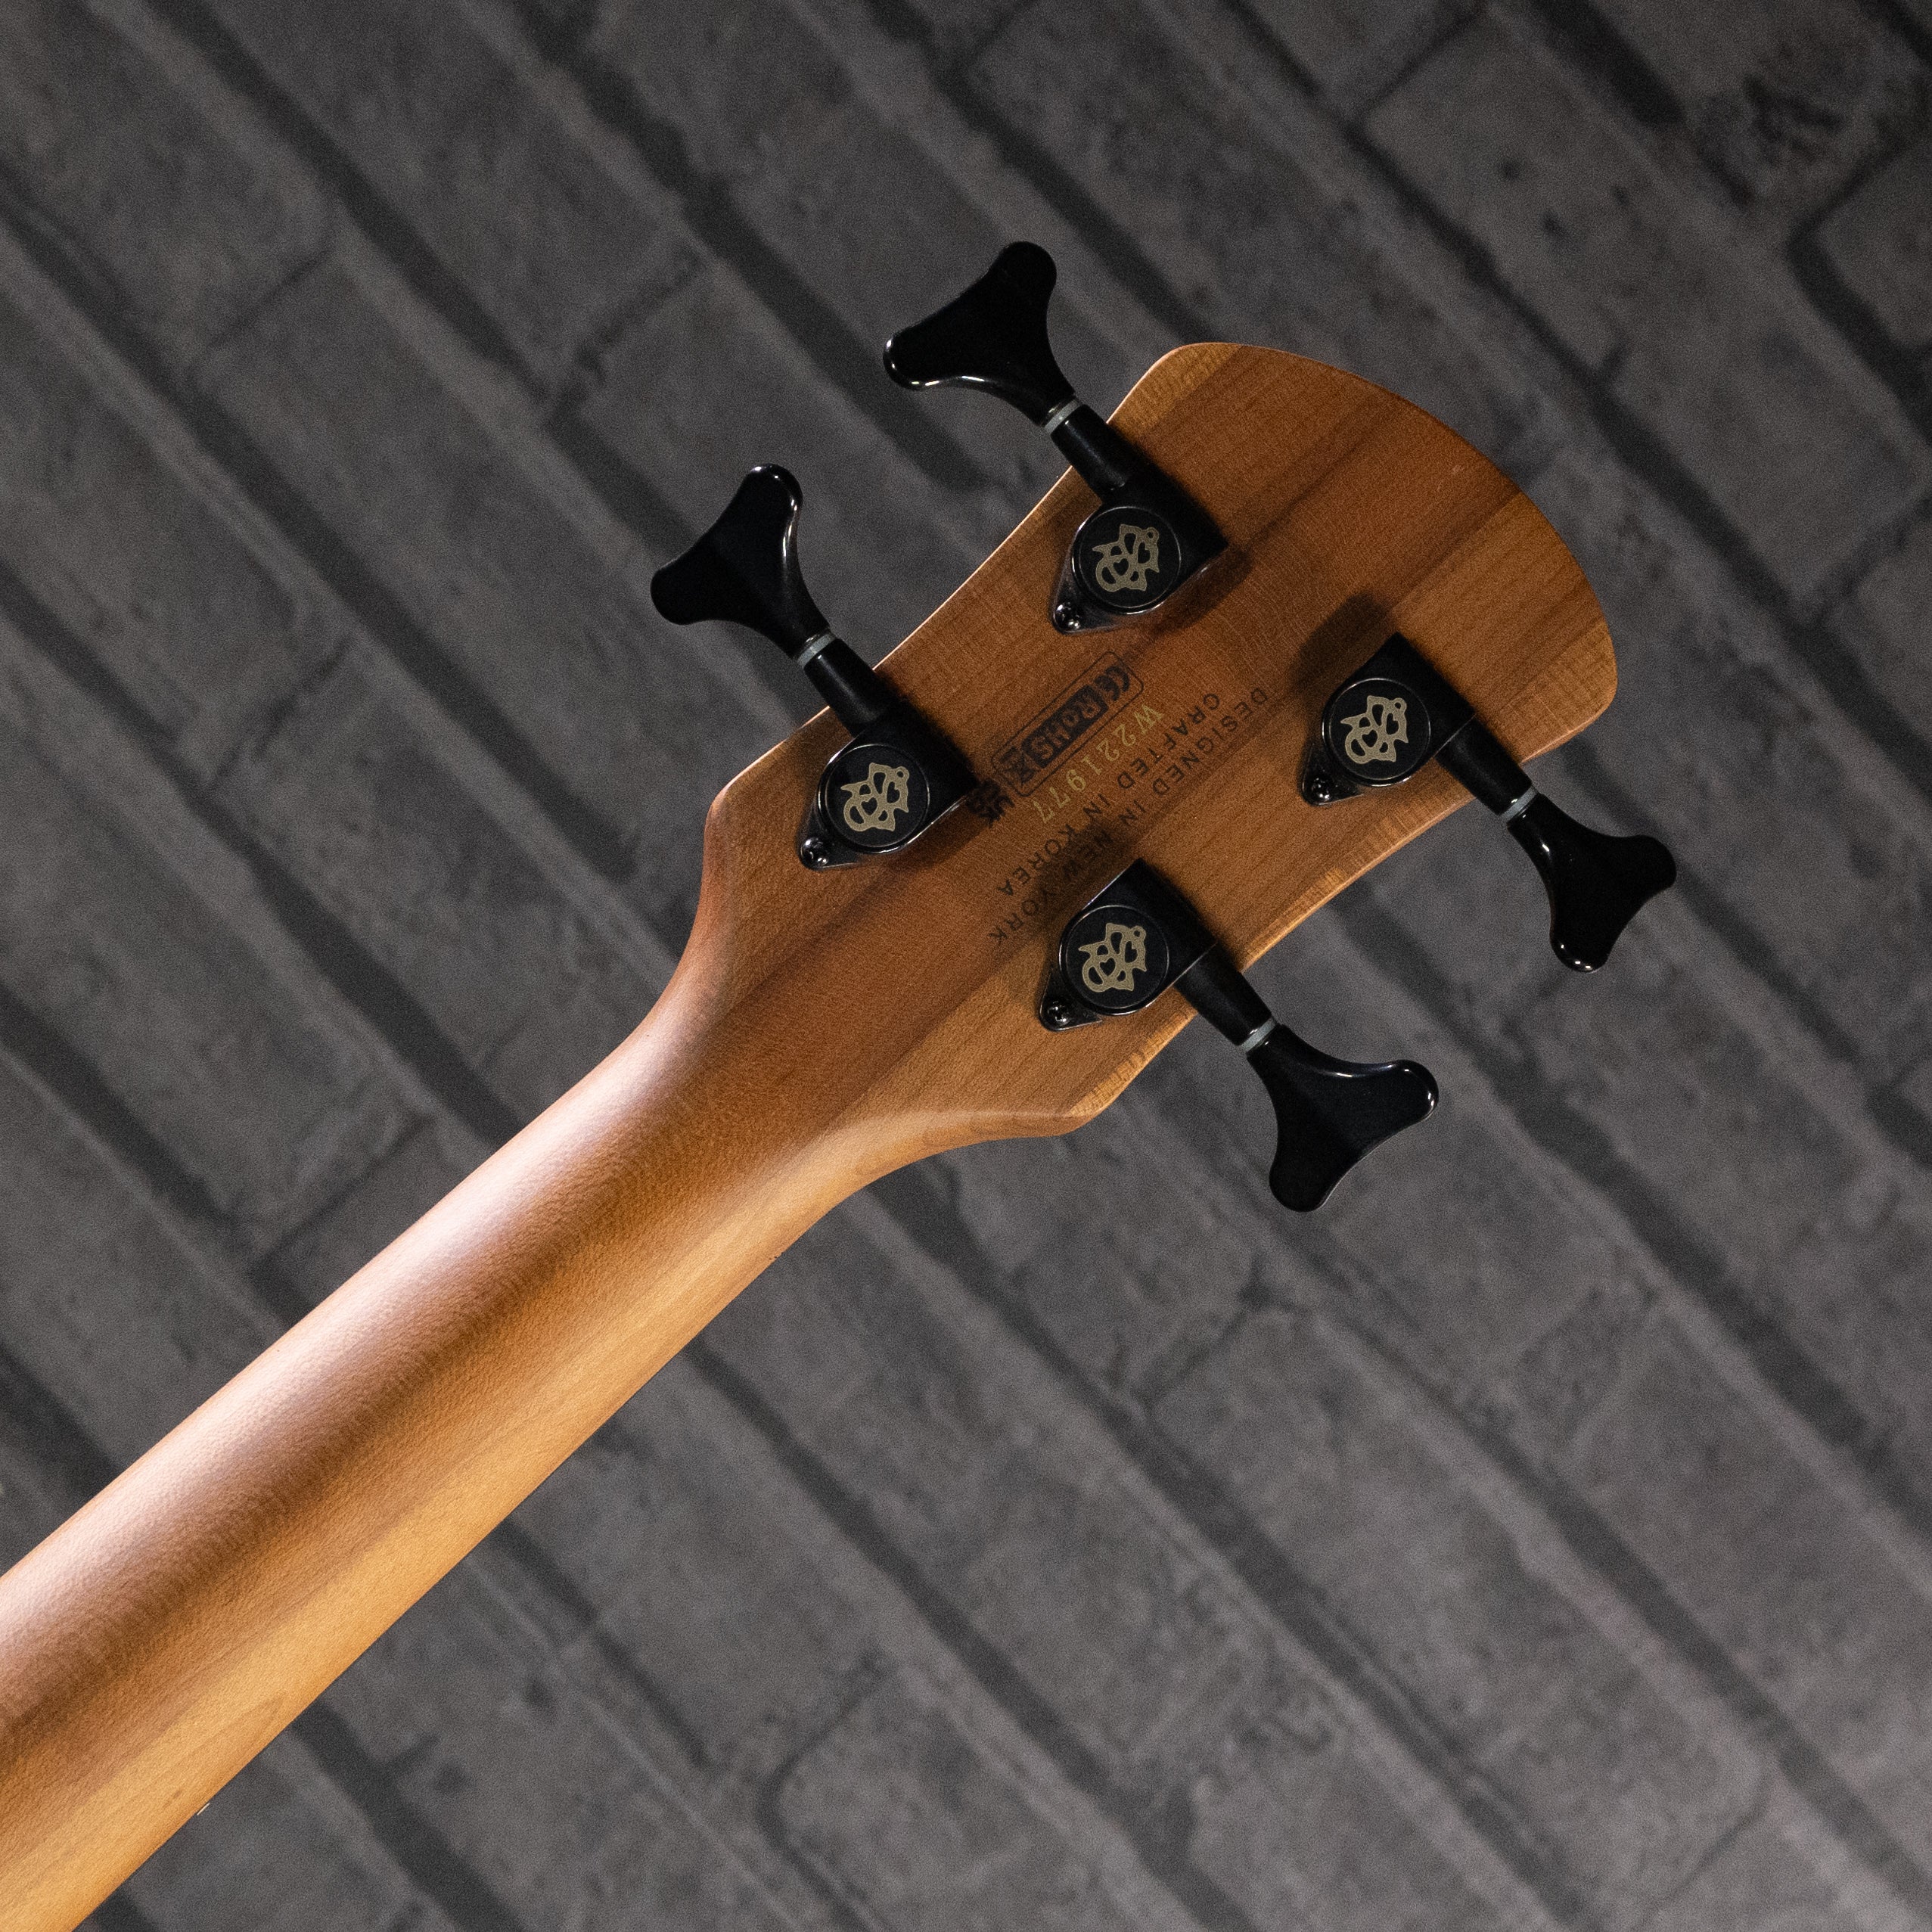 Spector NS Pulse 4 Bass Guitar (Black Cherry Matte)